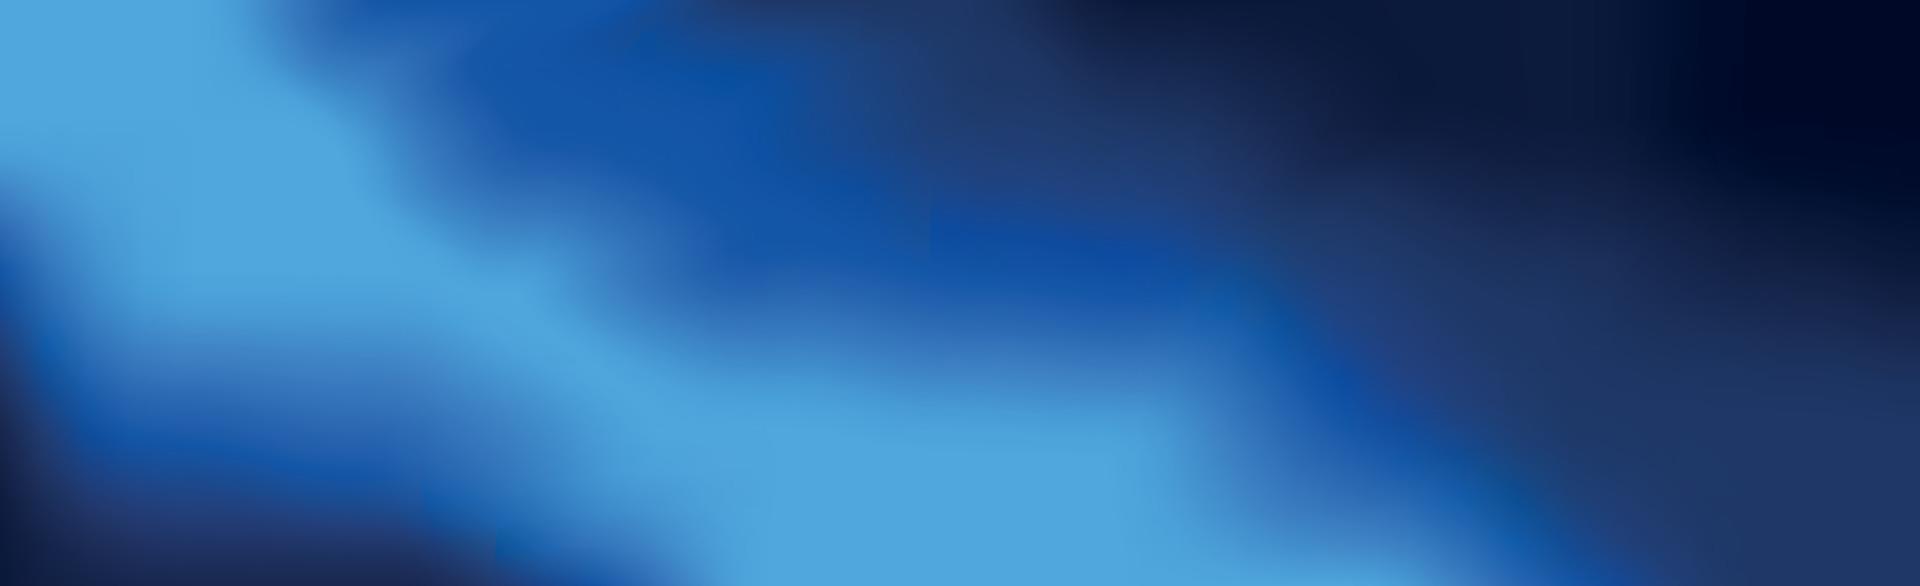 abstrakt panorama- bakgrund mörkblå lutning - vektor